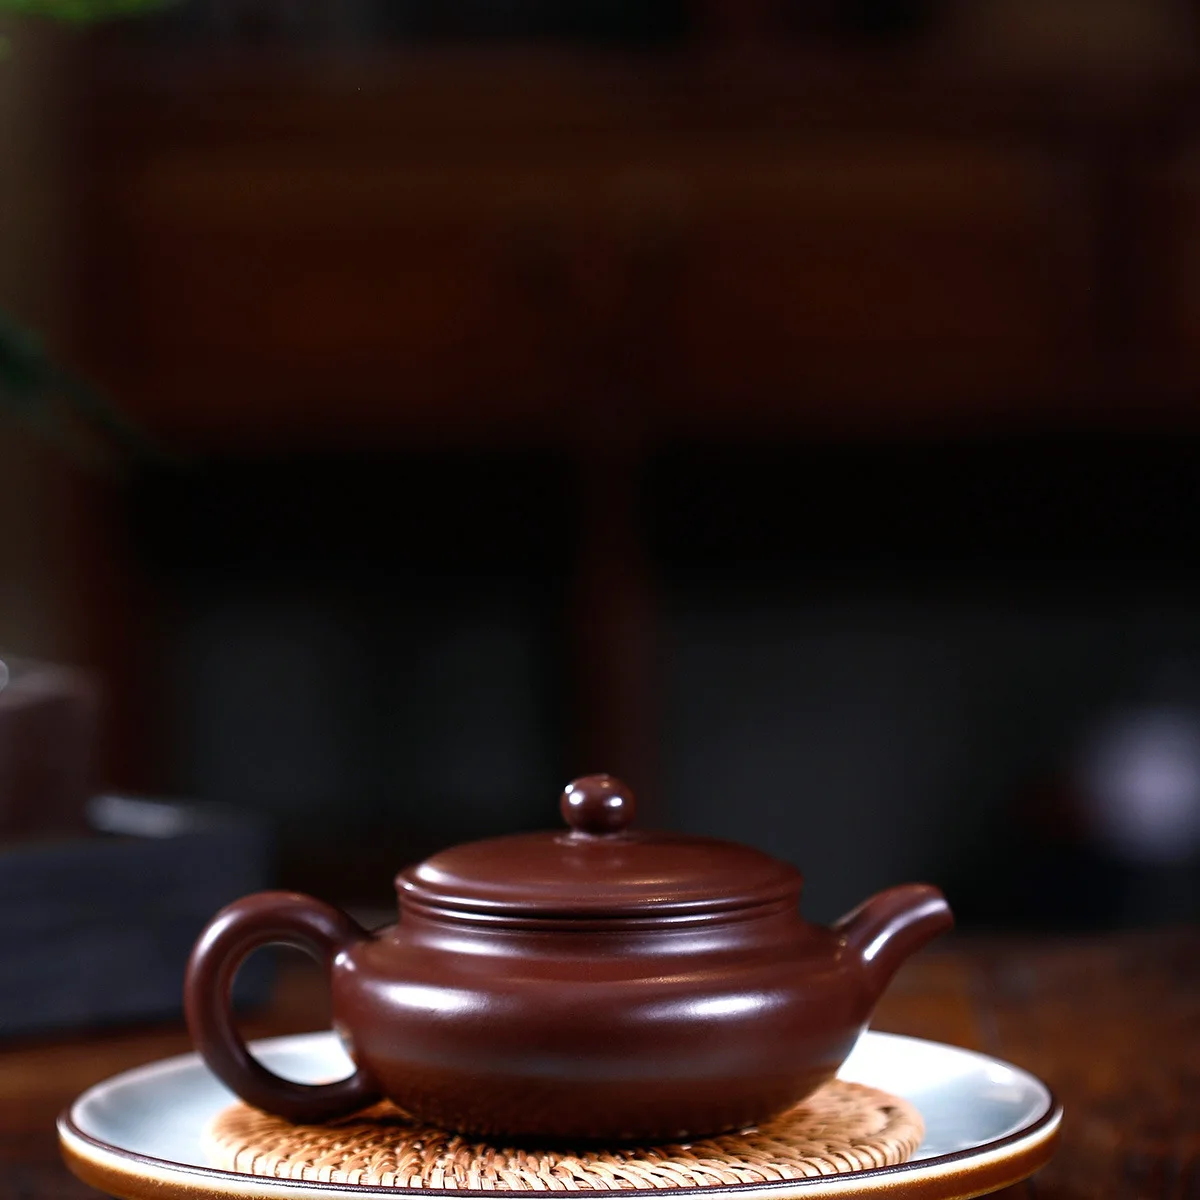 Знаменитый Полный ручной необработанный металлический пурпурный и красный грязевой плоский живот, чтобы поддельные что-то чайник в антикварном стиле кунгфу онлайн чайный горшок чайный сервиз костюм